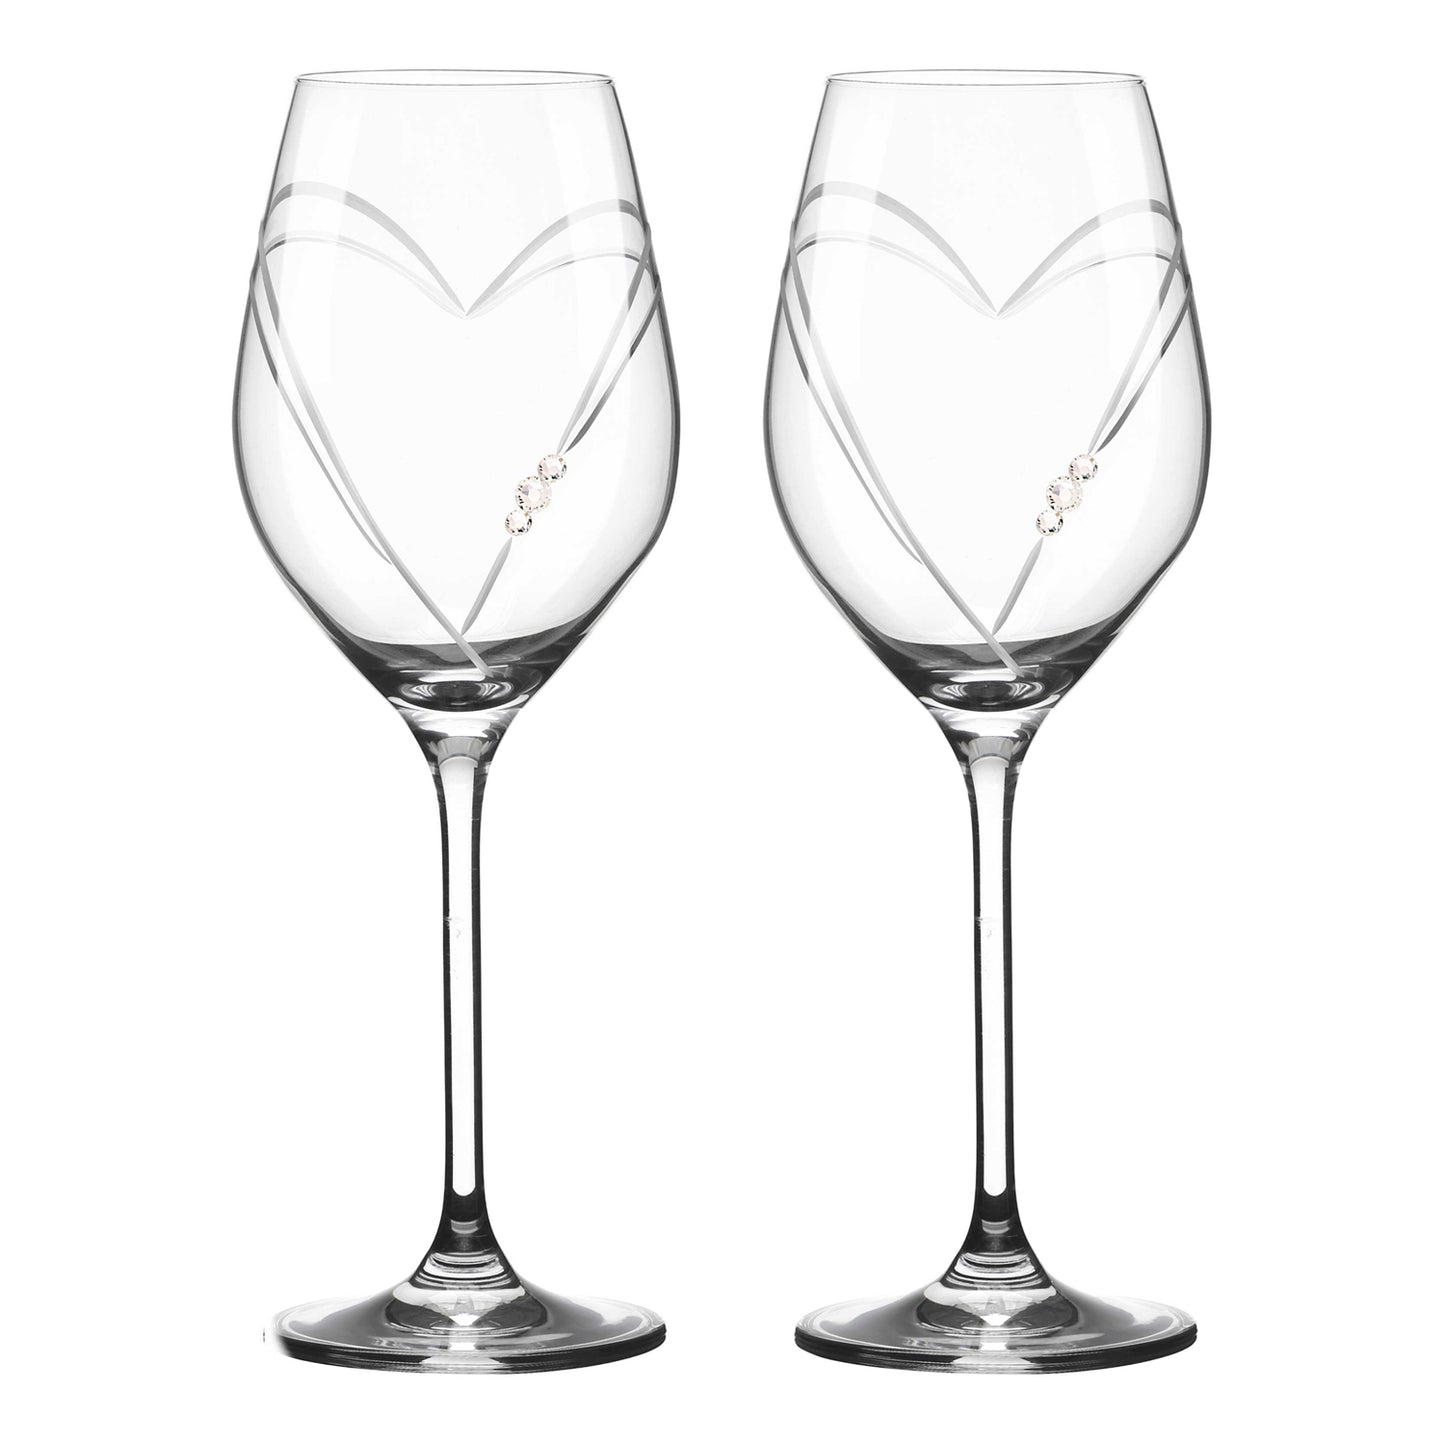 Matrivo Hvidvinsglas med Swarovski krystaller - 2 stk. Two Hearts